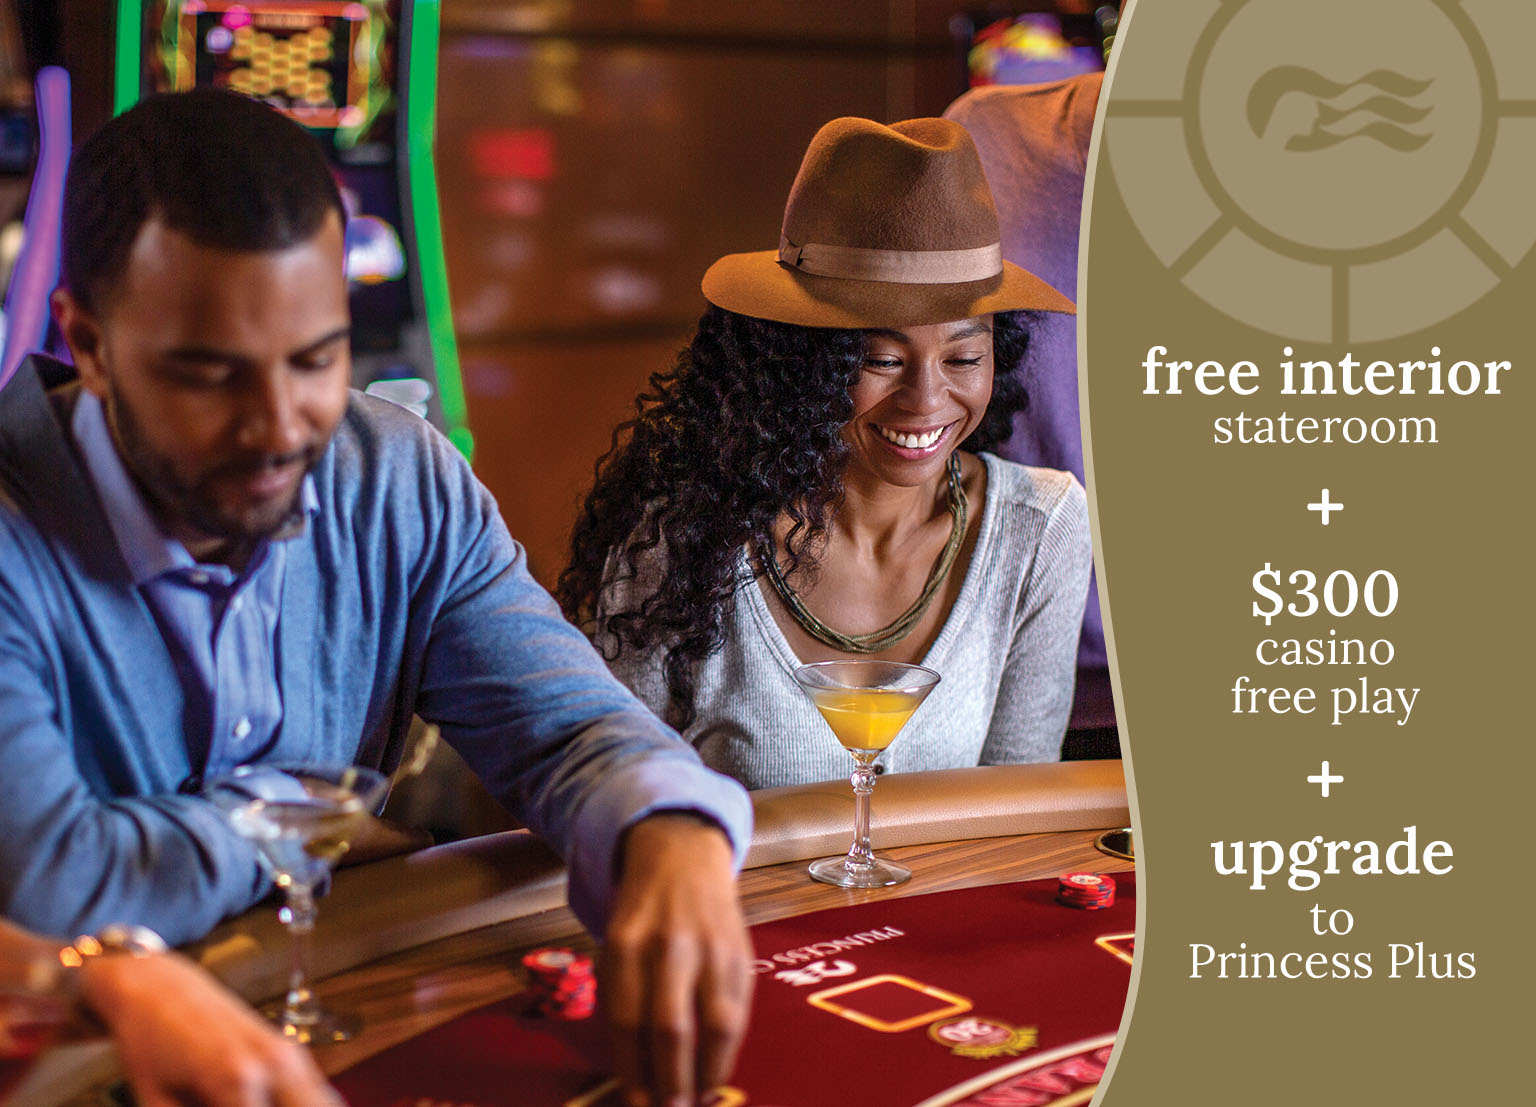 free interior stateroom + $300 casino free play + upgrade to Princess Plus